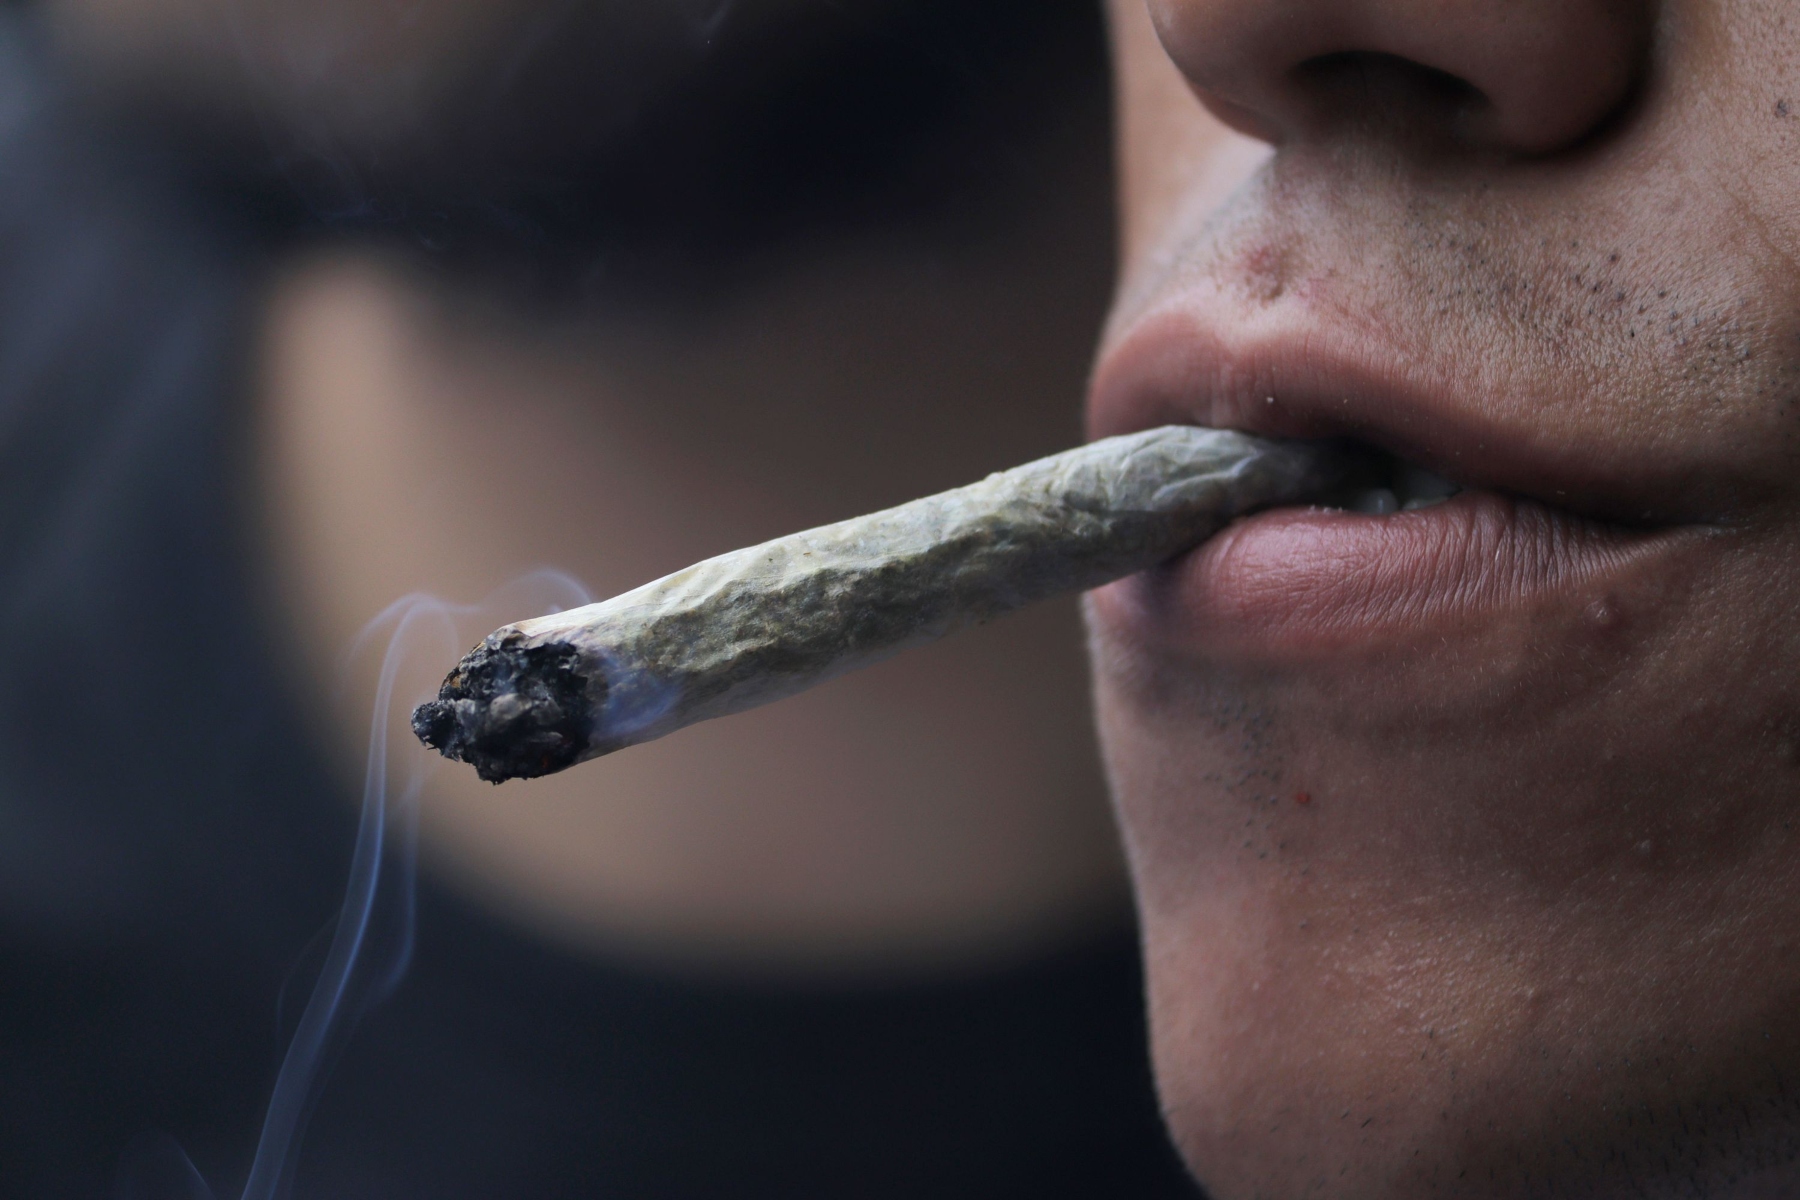 Μαριχουάνα εξαρτημένοι: Η μαριχουάνα αυξάνει τον κίνδυνο καρδιακής προσβολής σε εξαρτημένους